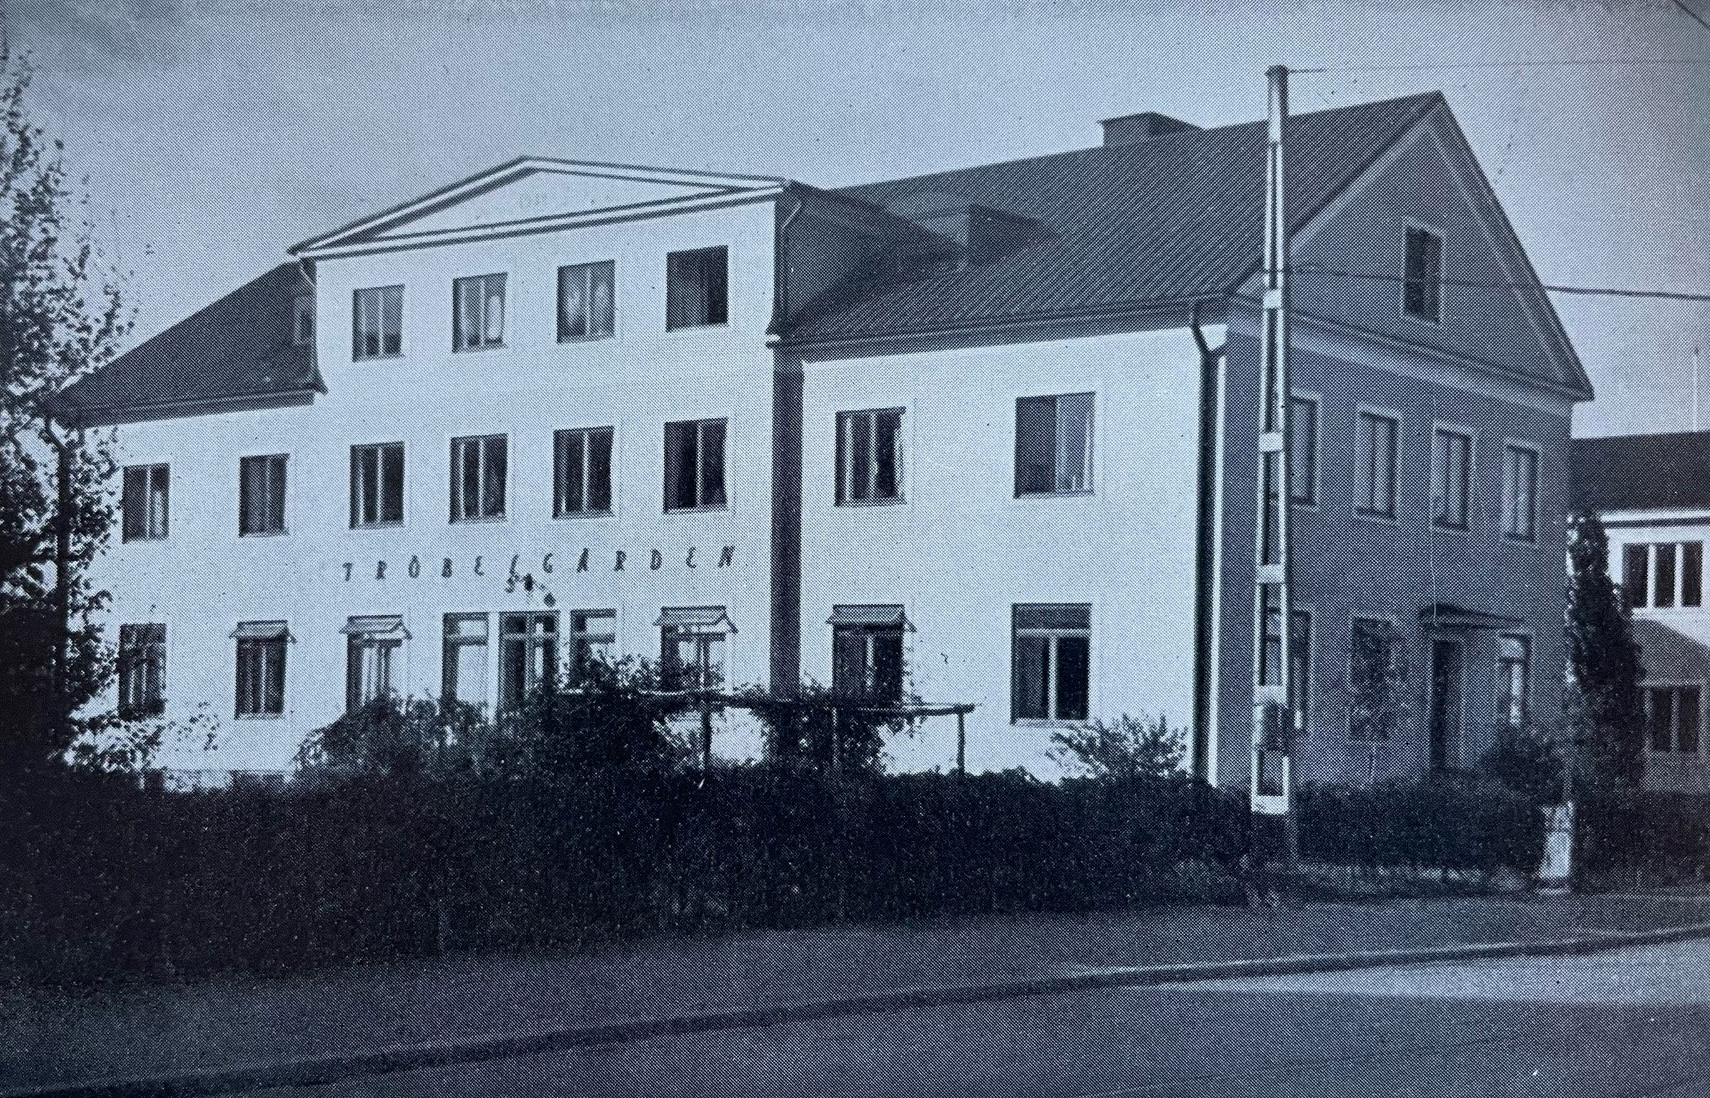 Äldre svartvitt foto visar en stod byggnad vid en gata. På byggnadens ena väg står texten "Fröbelgården".